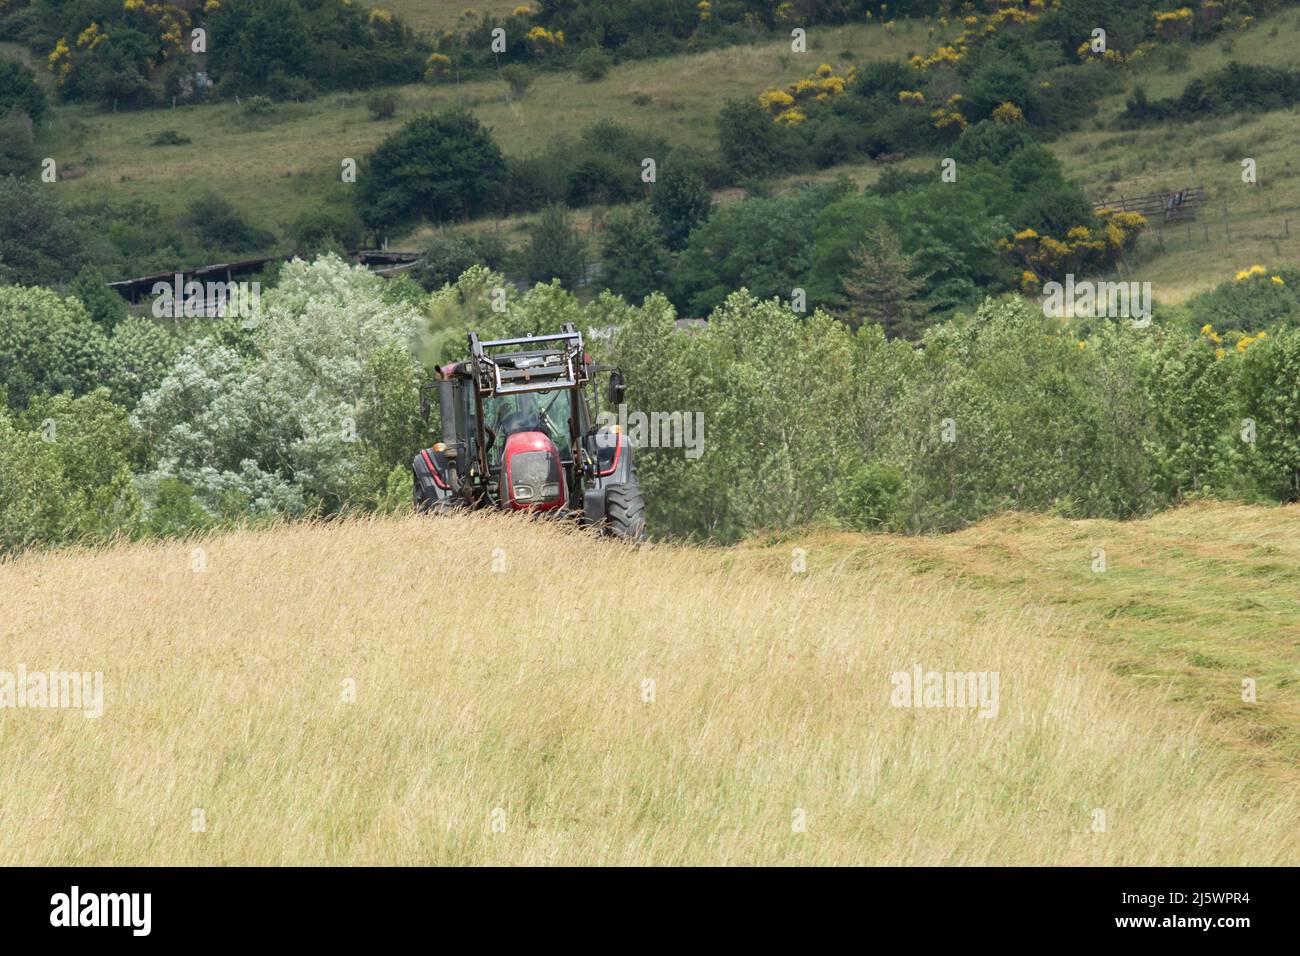 Un tracteur dans les champs pendant la période des foins Foto Stock